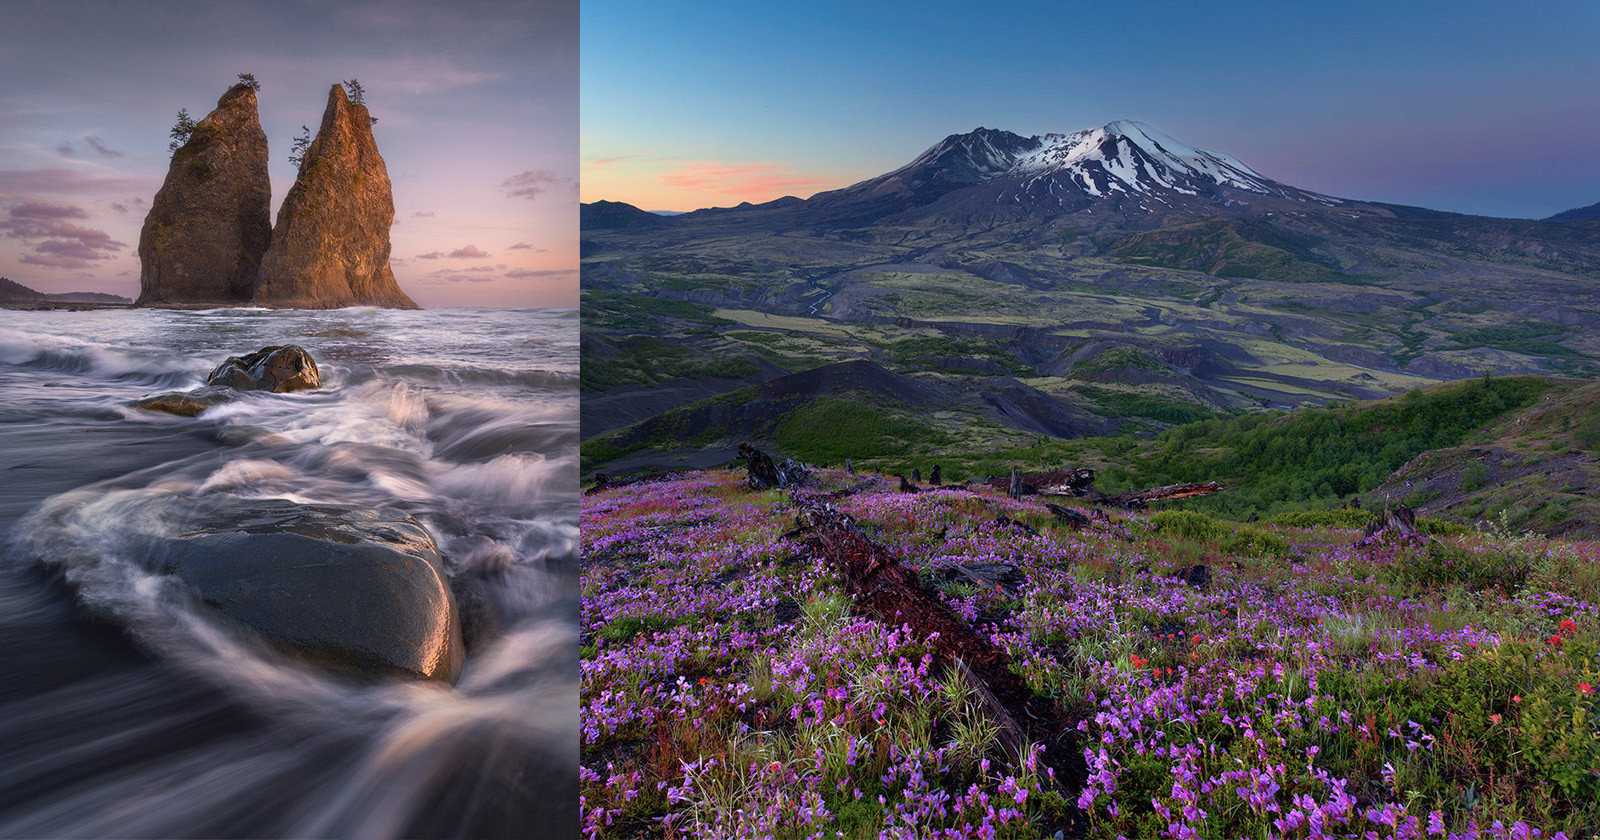 Washington States Striking Beauty Through the Eyes of 7 Photographers